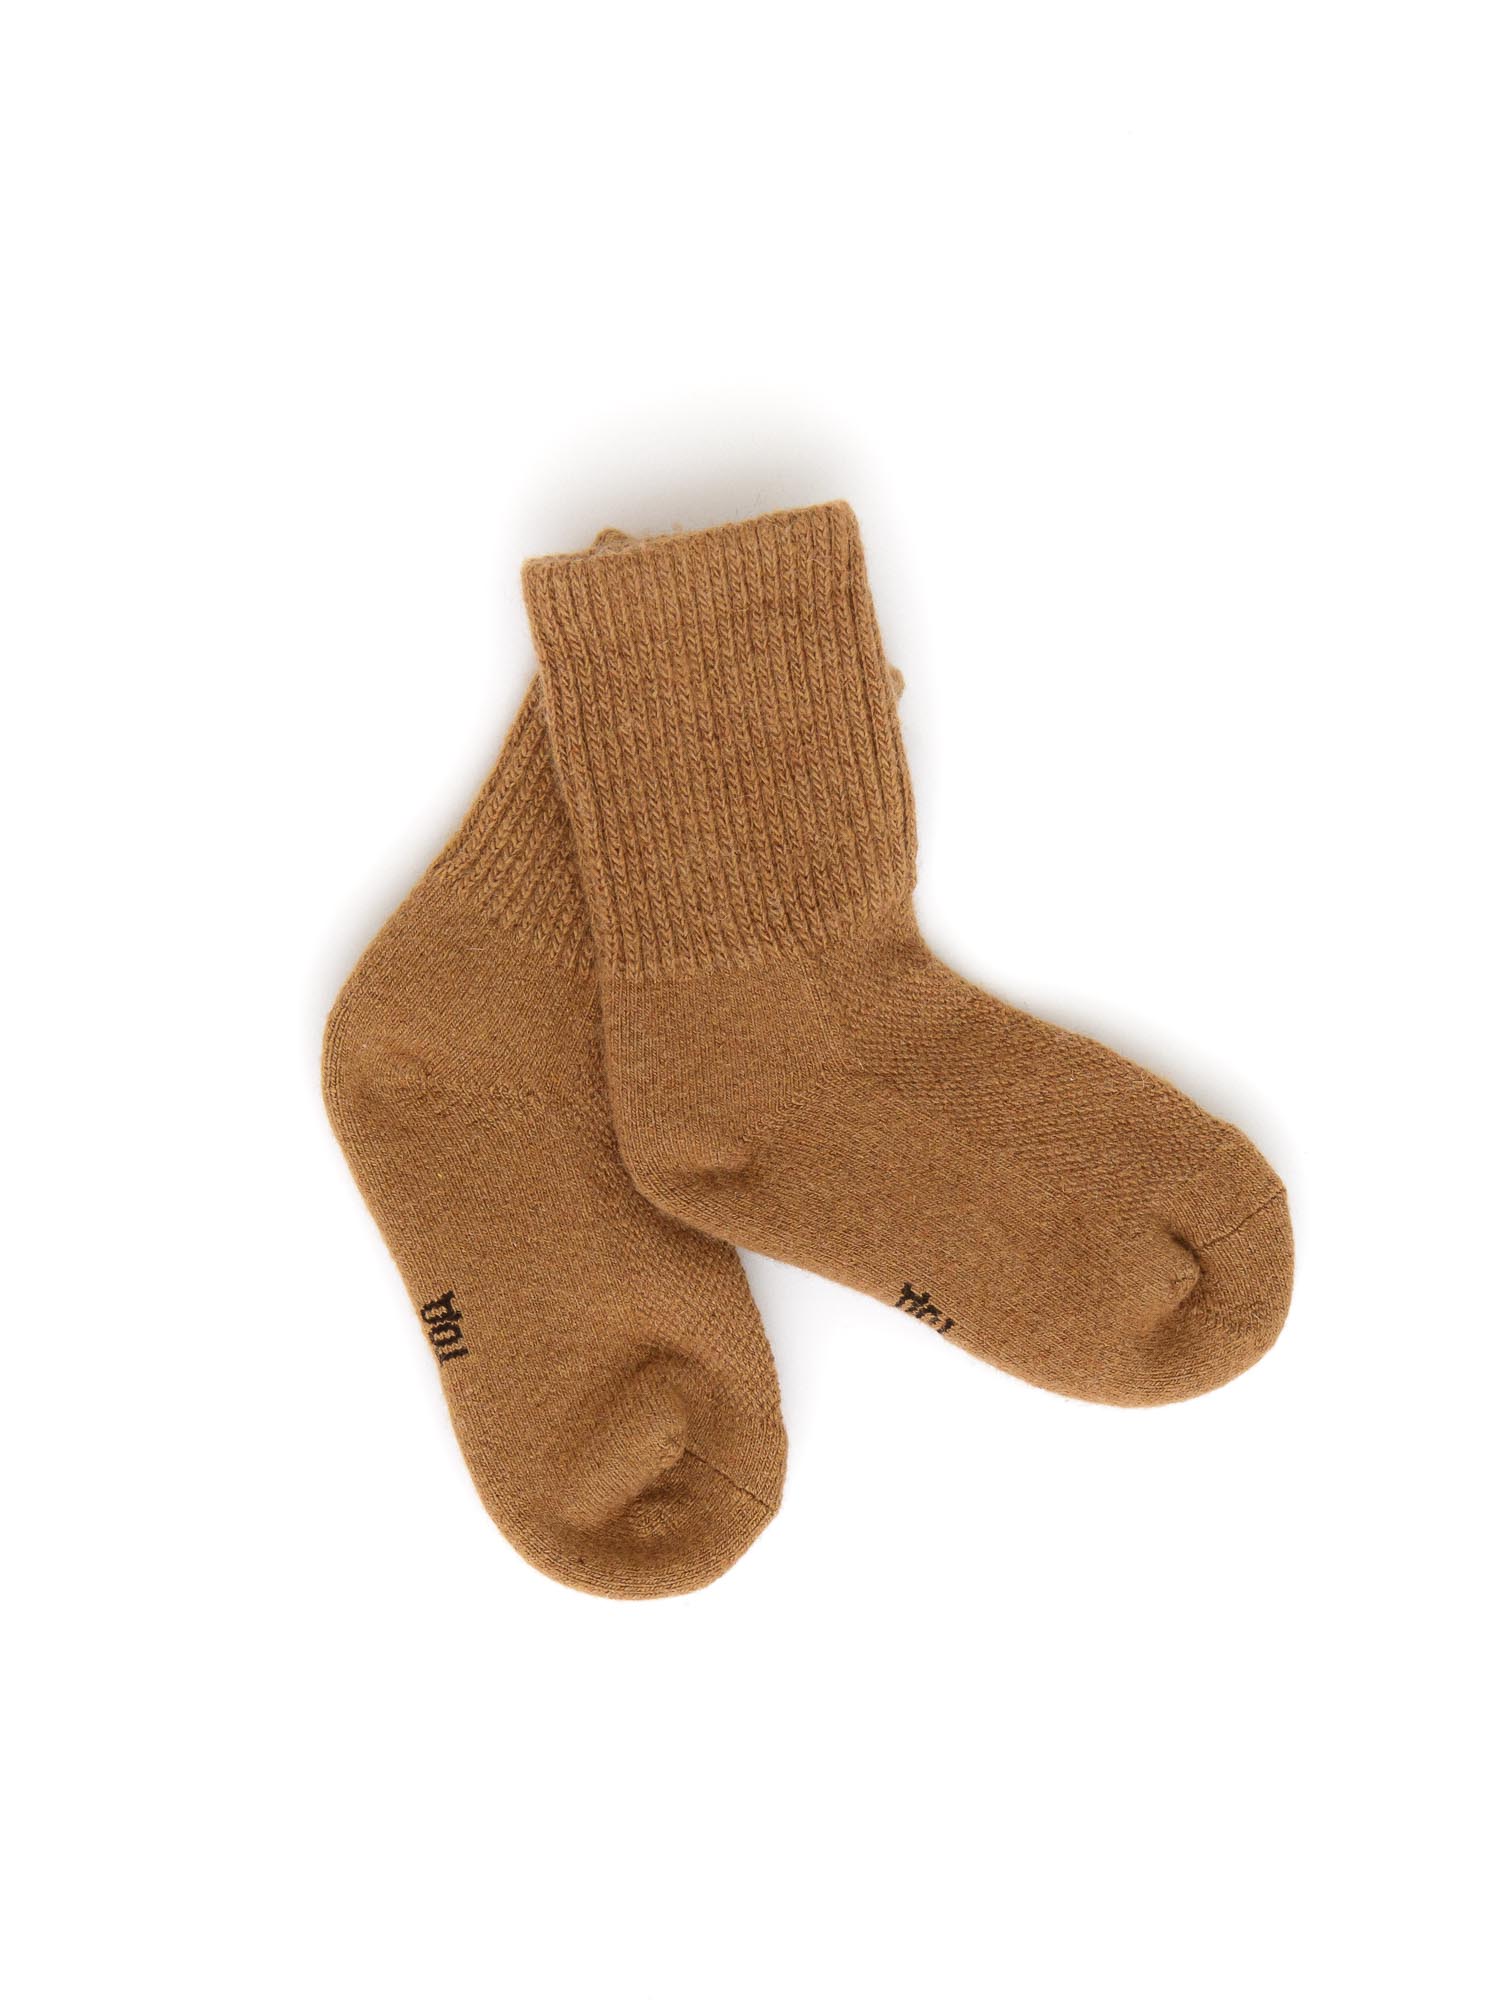 Детские носки из монгольской шерсти 3Р ТОД ОЙМС ХХК, цвет рыжий, размер 3 (14-16 см) - фото 1